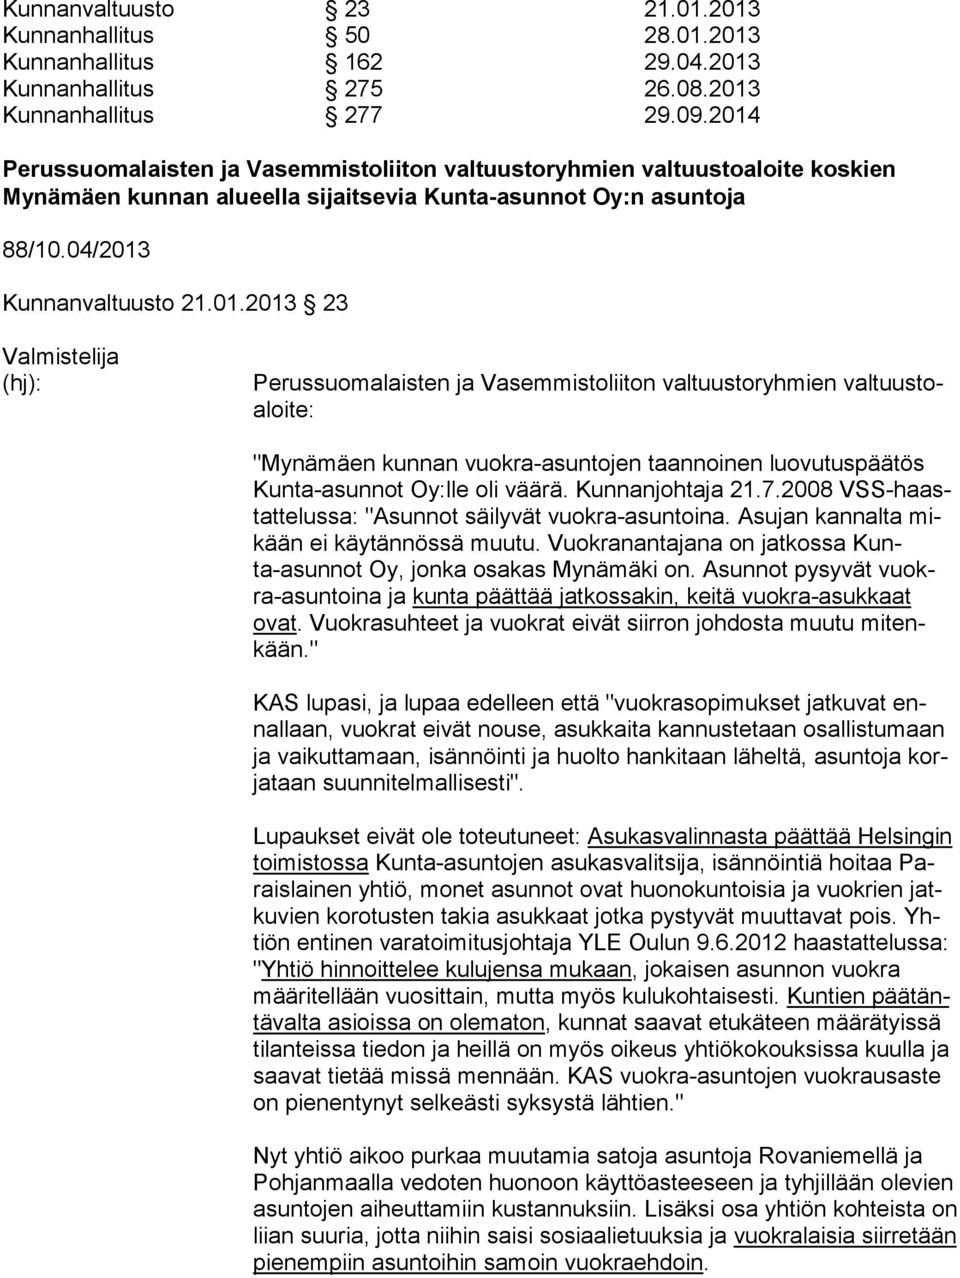 Kunnanjohtaja 21.7.2008 VSS-haastattelussa: "Asunnot säilyvät vuokra-asuntoina. Asujan kannalta mikään ei käytännössä muutu. Vuokranantajana on jatkossa Kunta-asunnot Oy, jonka osakas Mynämäki on.